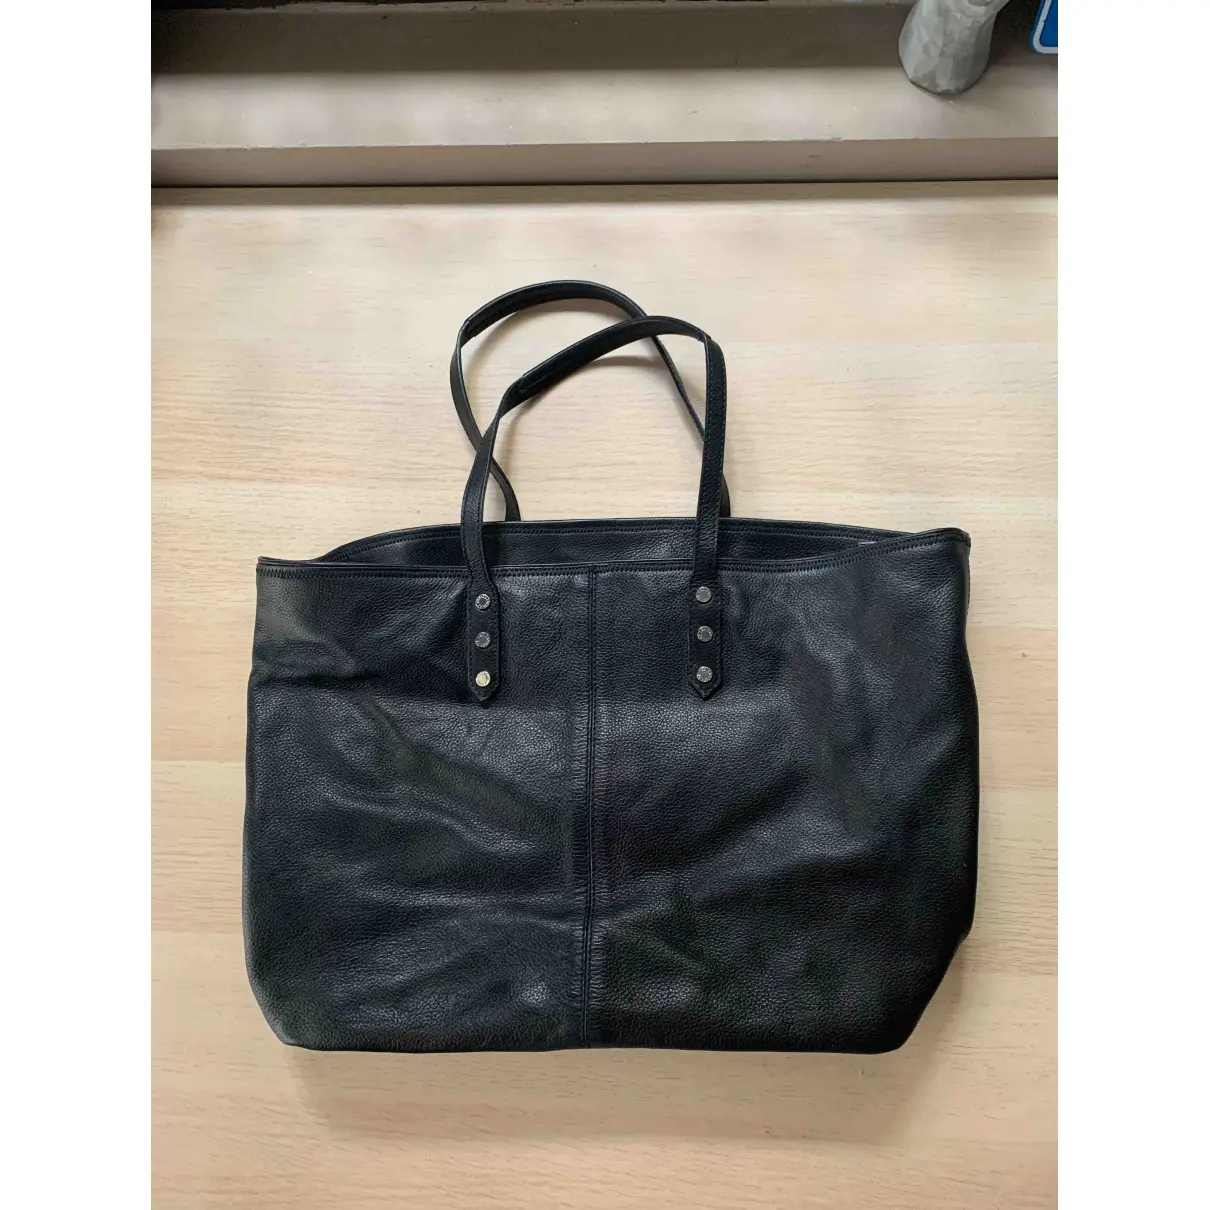 Buy Zadig & Voltaire Fall Winter 2019 leather handbag online